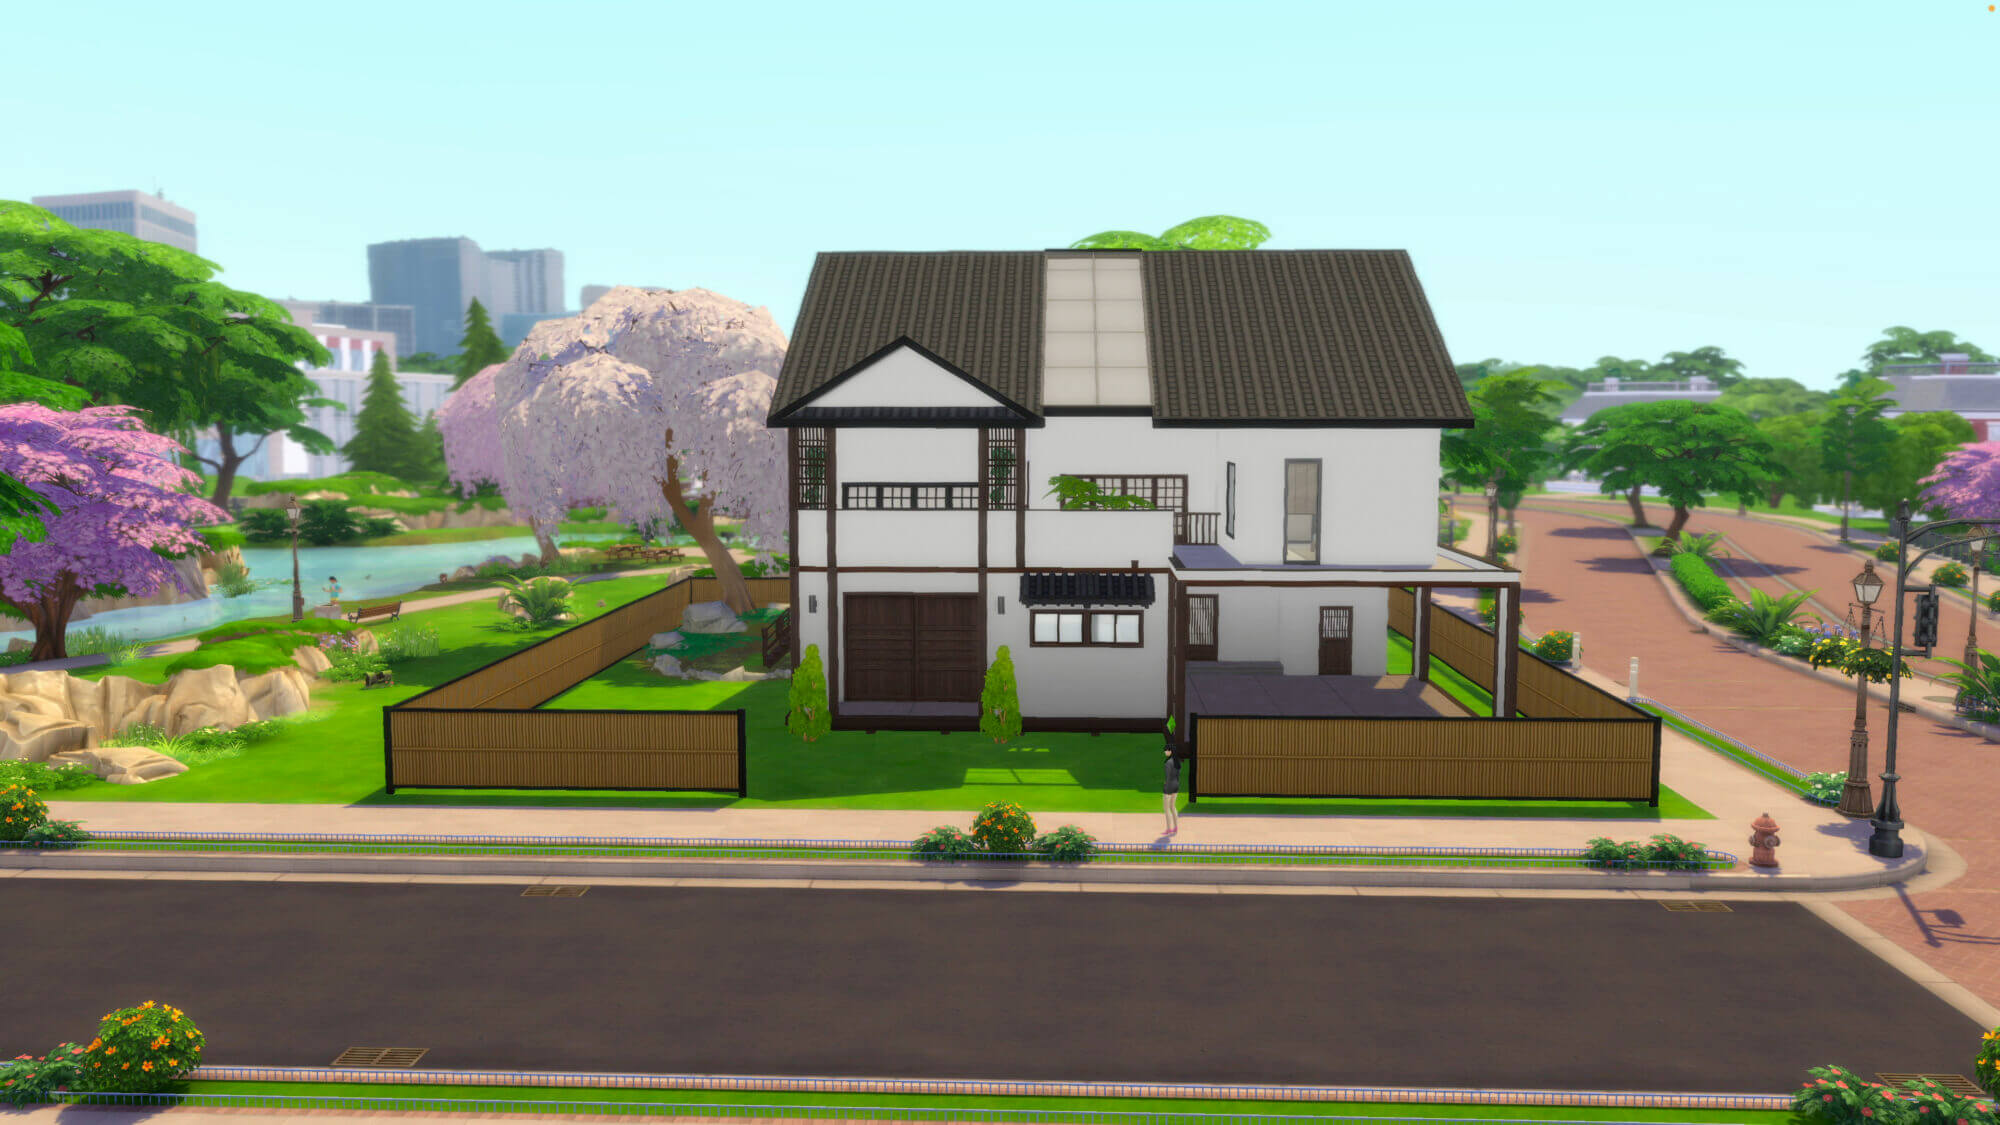 แจกบ้าน The Sims 4 สไตล์บ้านเดี่ยวโฮมมี่ | Inspire by หทัยราษฎร์ 39 5